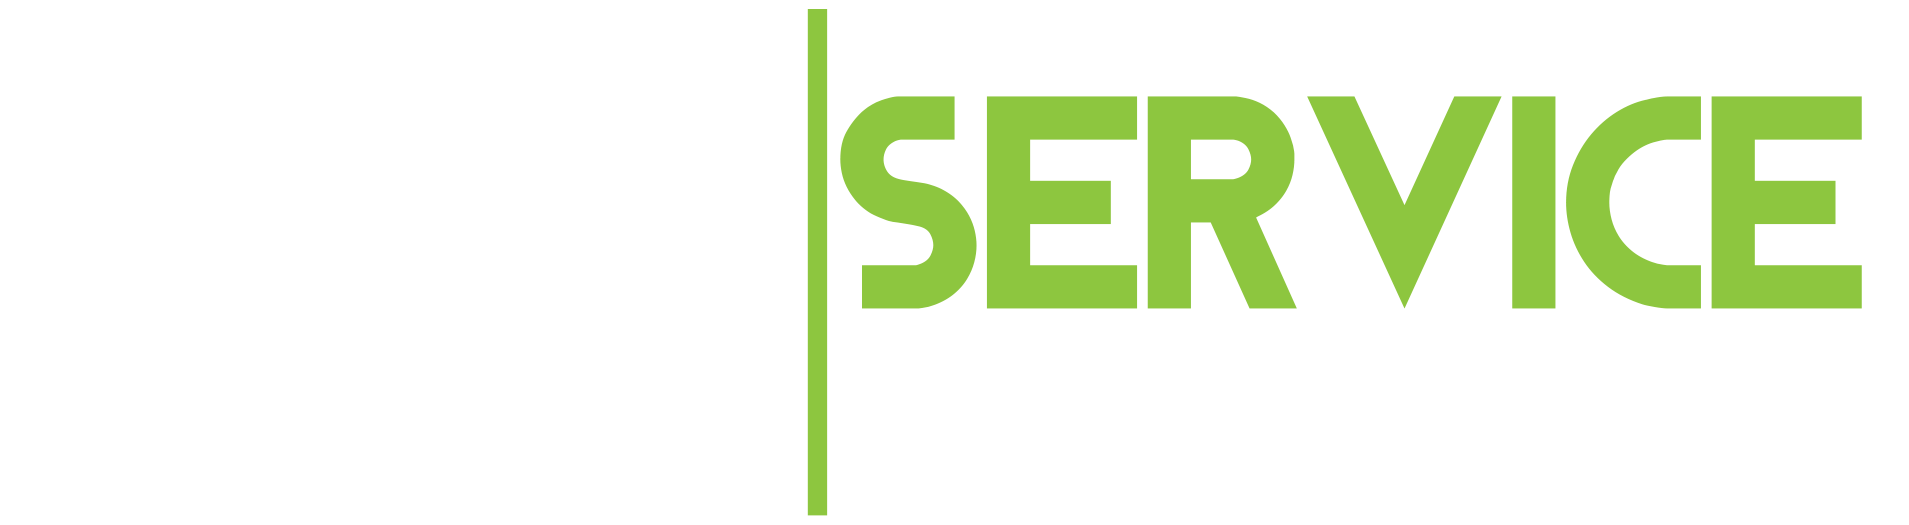 ACC_Service_logo